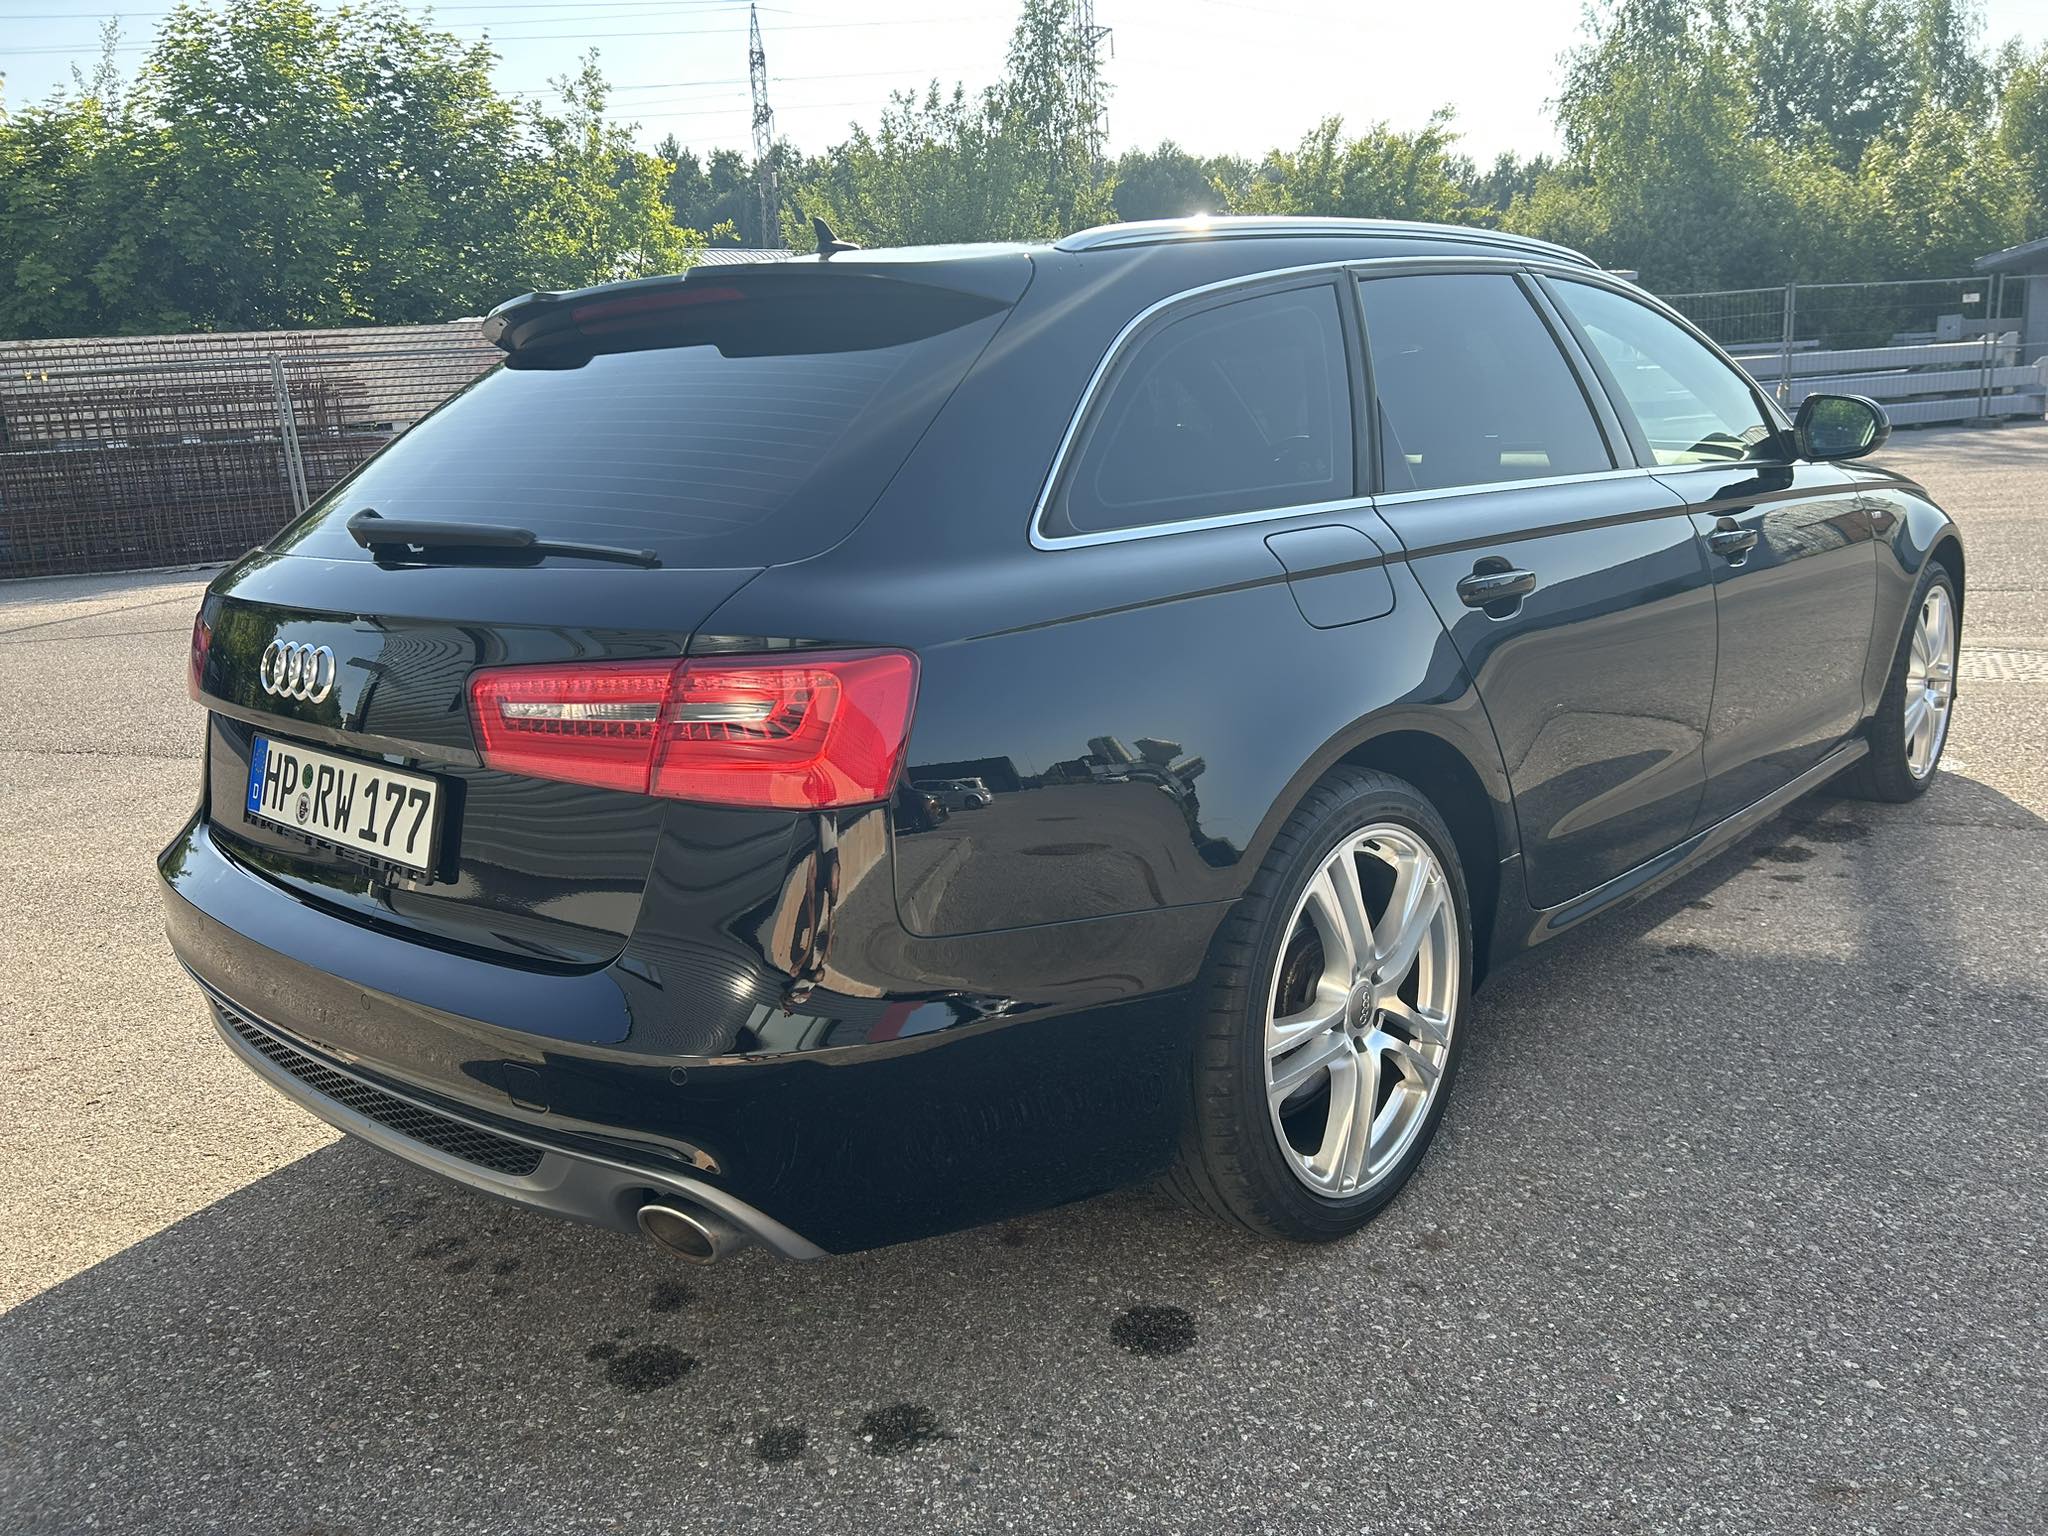 Audi A6 3.0l., universalas